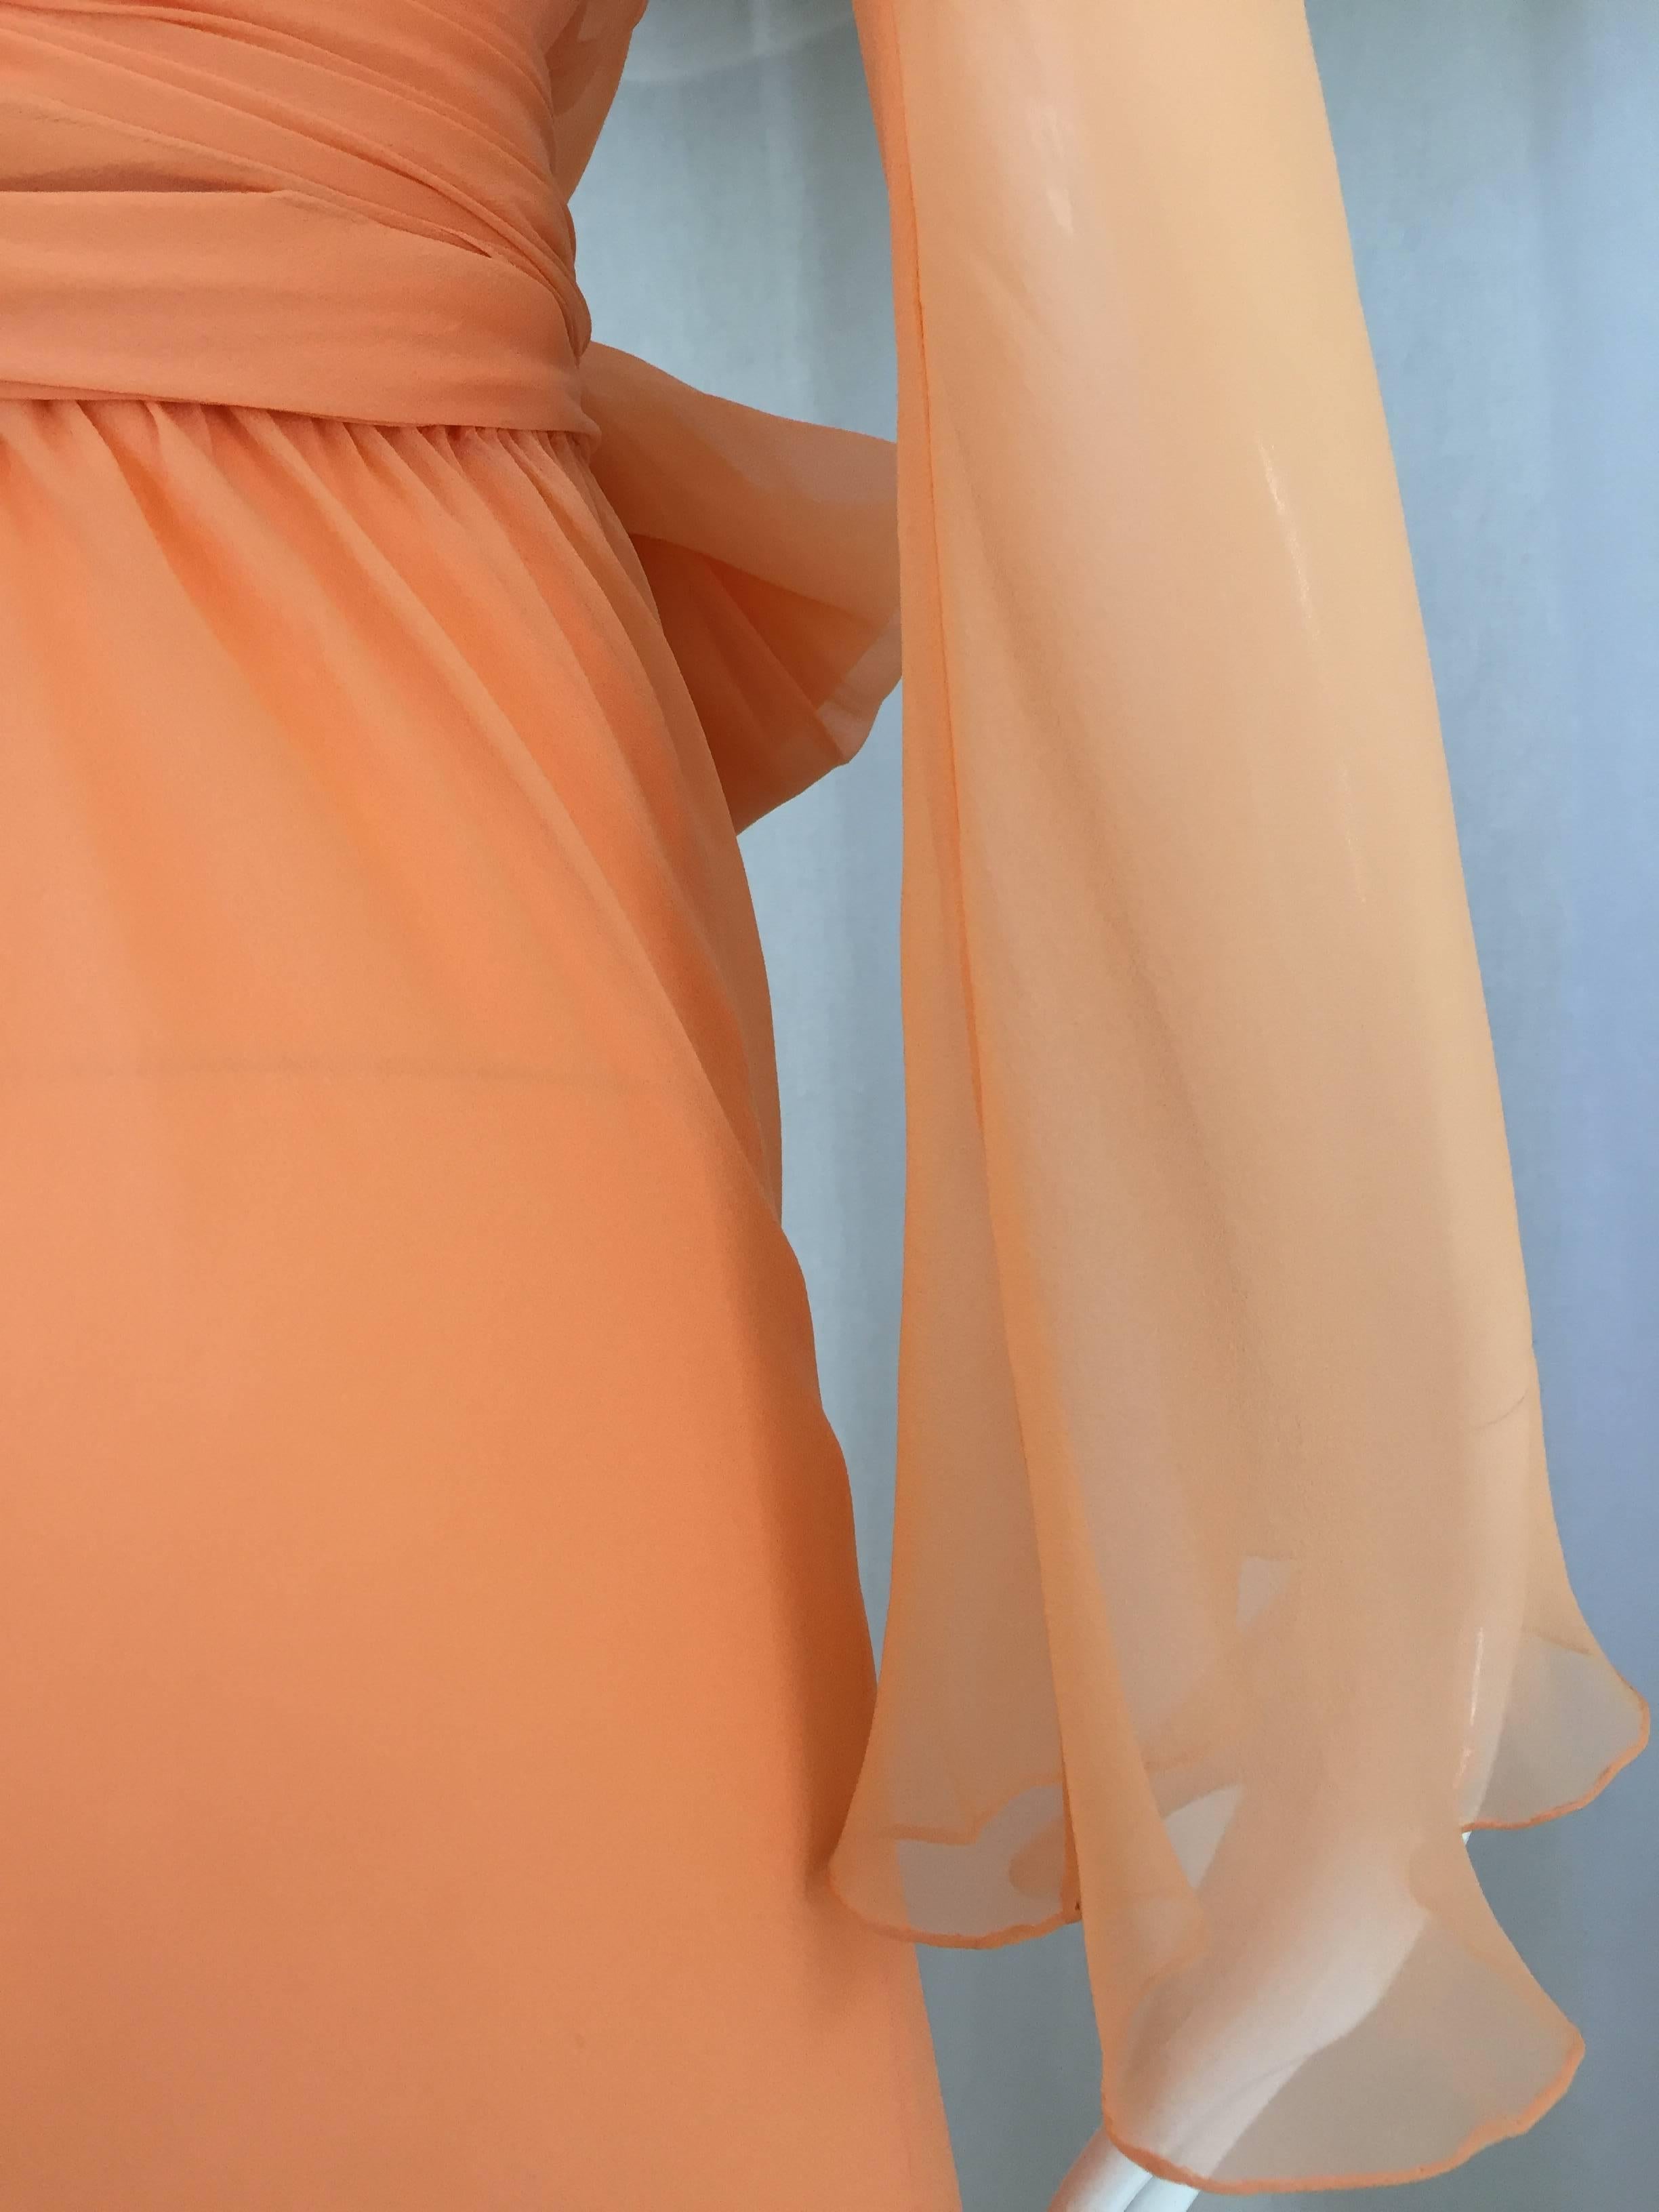 Orange Halston tangerine silk chiffon gown, 1970s 